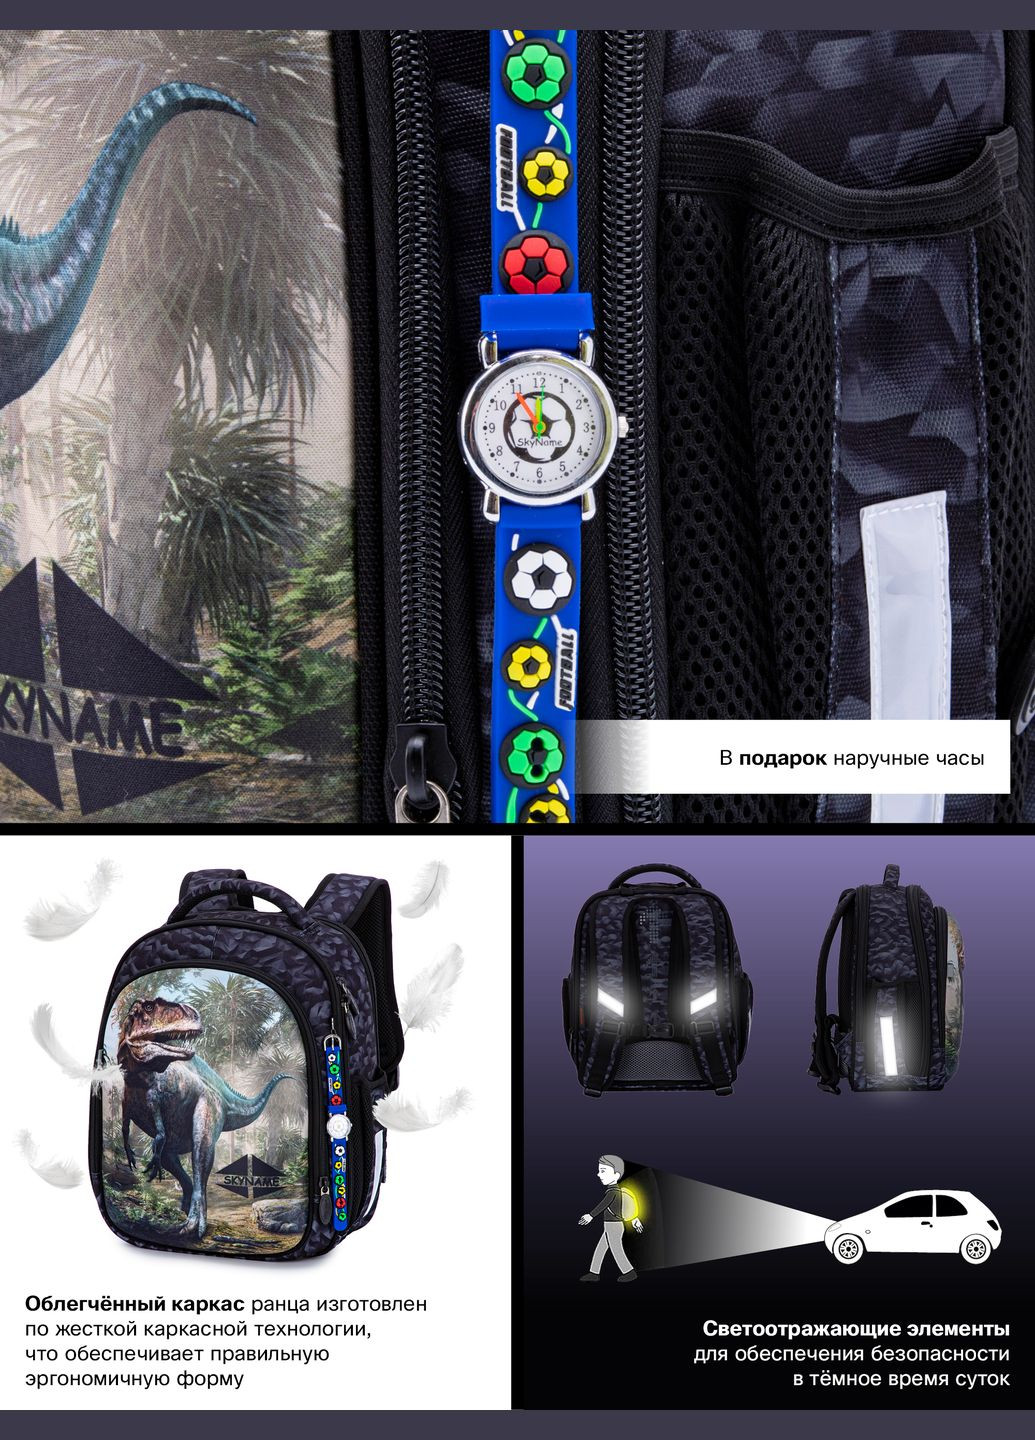 Ортопедичний шкільний рюкзак для хлопчика сірий з Динозавром /SkyName 37х29х18 см для першокласника (R4-415) Winner (293504277)